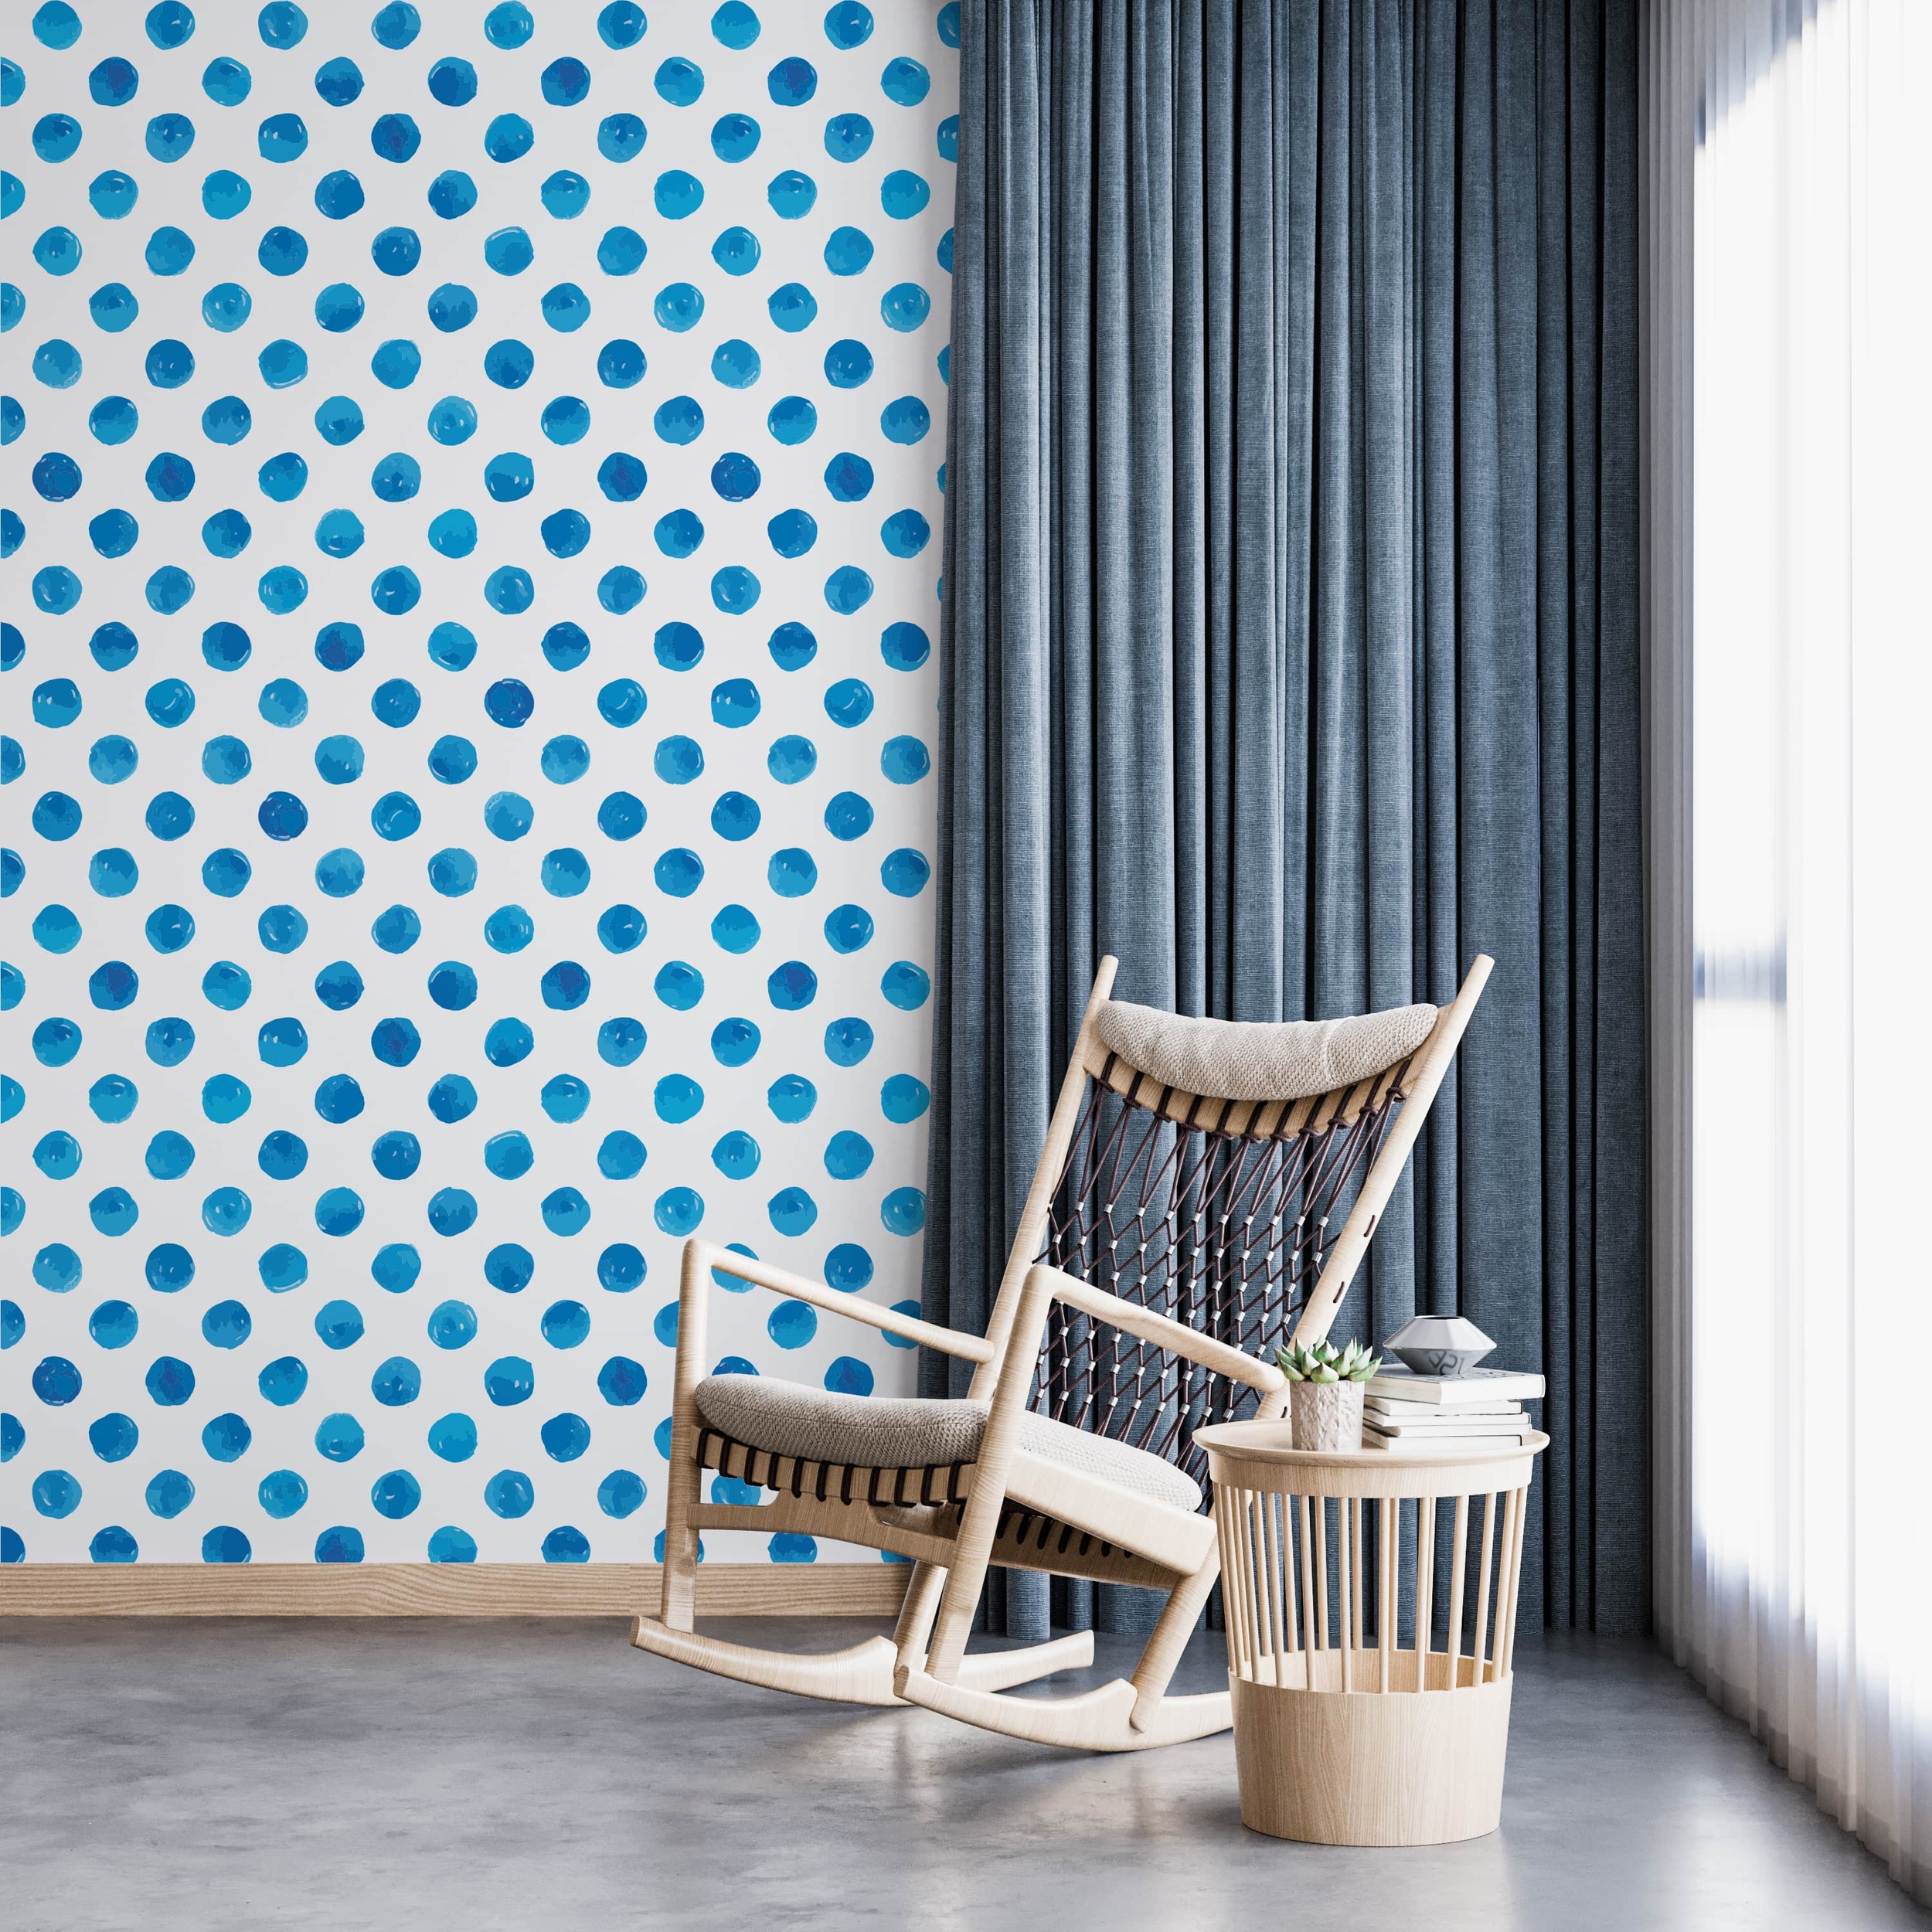 PP69-mur-papier-peint-adhesif-decoratif-revetement-vinyle-motifs-ronds-peint-à-l’aquarelle-bleu-renovation-meuble-mur-min